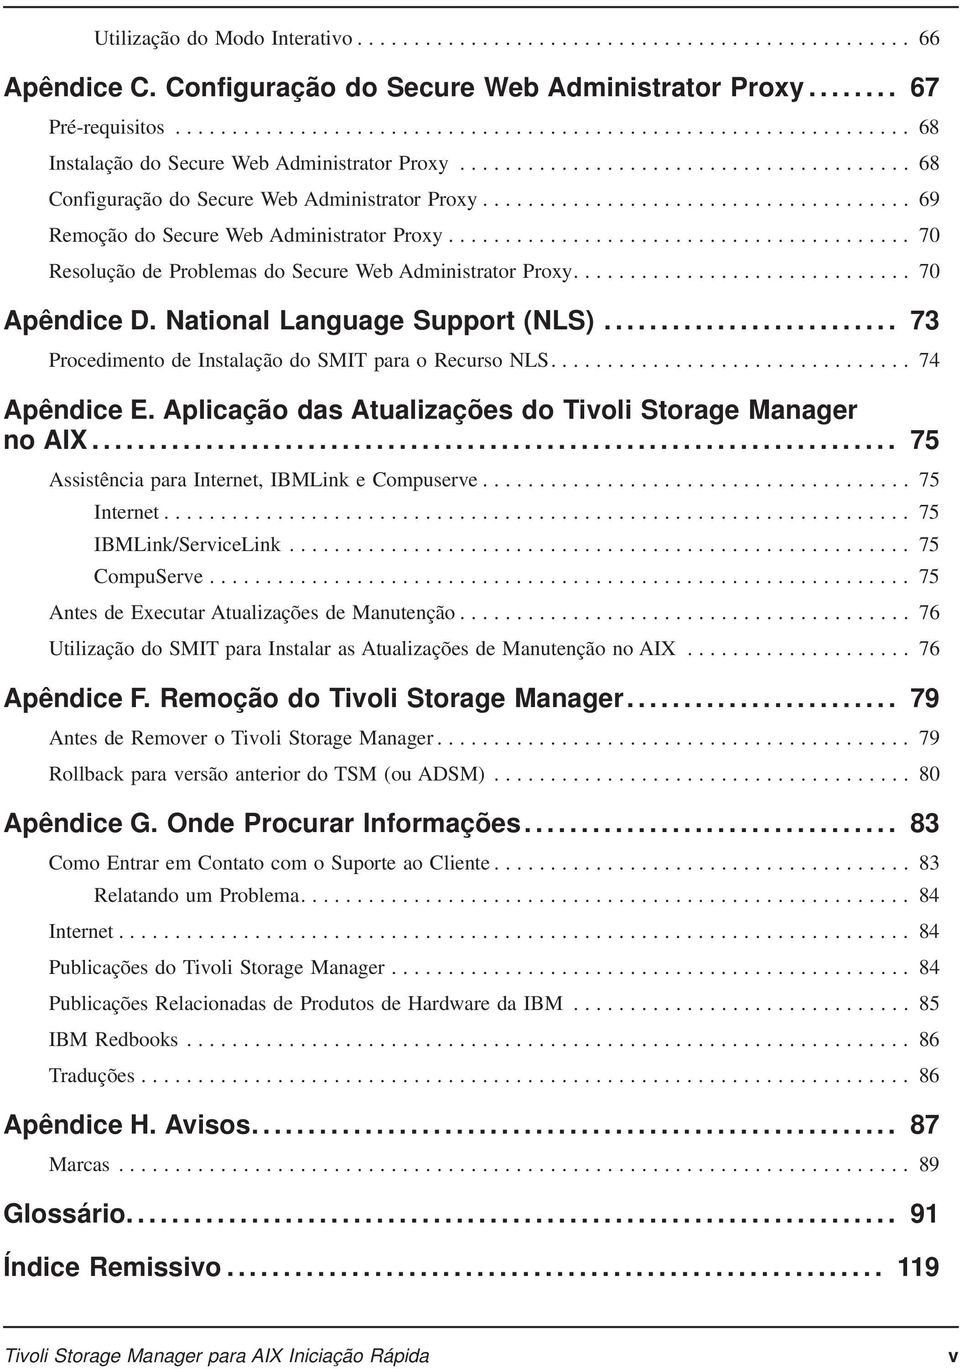 National Language Support (NLS)... 73 Procedimento de Instalação do SMIT para o Recurso NLS.... 74 Apêndice E. Aplicação das Atualizações do Tivoli Storage Manager no AIX.